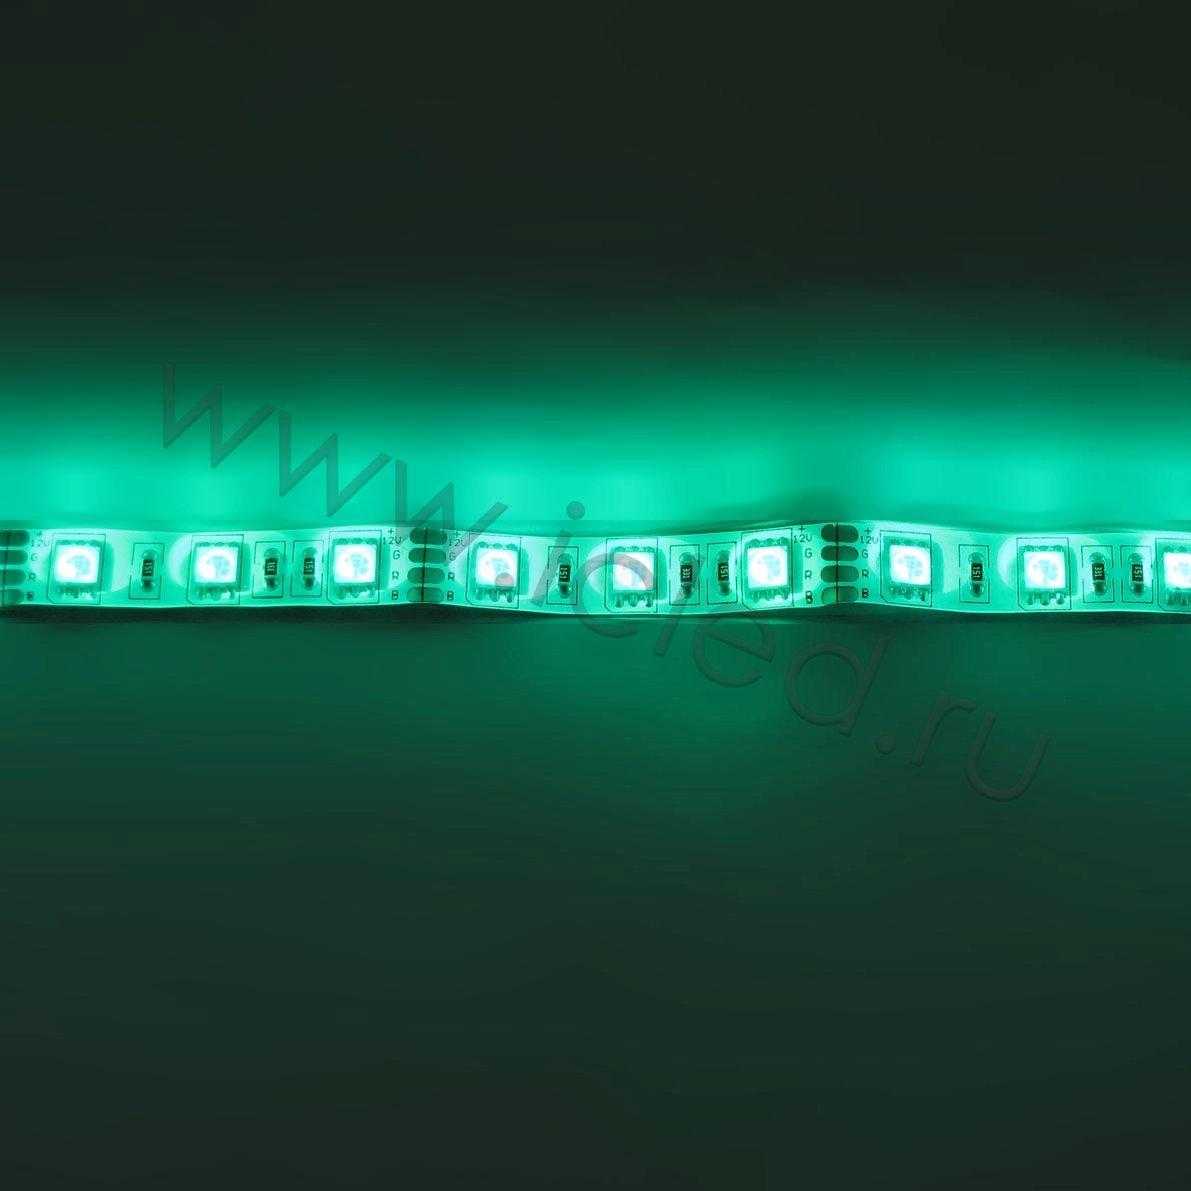 Влагозащищенные светодиодные ленты Светодиодная лента Standart class, 5050, 60led/m, RGB, 12V, IP65 Icled